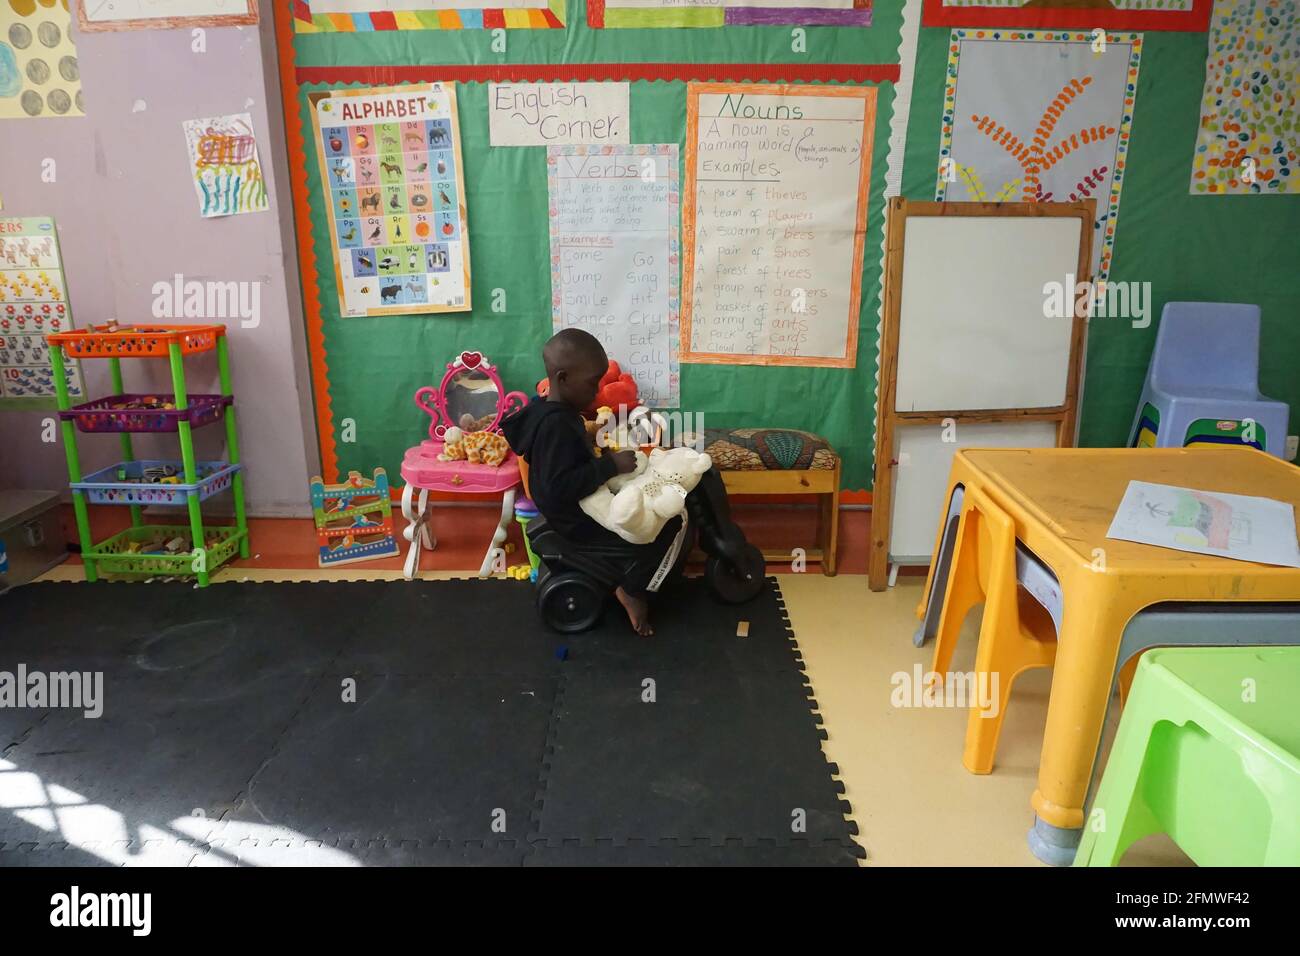 Zambie, Zambie. 19 avril 2021. Un garçon survivant au cancer joue avec des jouets dans un espace d'apprentissage de Twende Education for All, une organisation à but non lucratif qui fournit un soutien éducatif aux enfants vulnérables en Zambie, à Lusaka, capitale de la Zambie, le 19 avril 2021. POUR ALLER AVEC 'Feature: École zambienne à l'hôpital donnant de l'espoir aux enfants atteints de cancer' crédit: Lillian Banda/Xinhua/Alamy Live News Banque D'Images